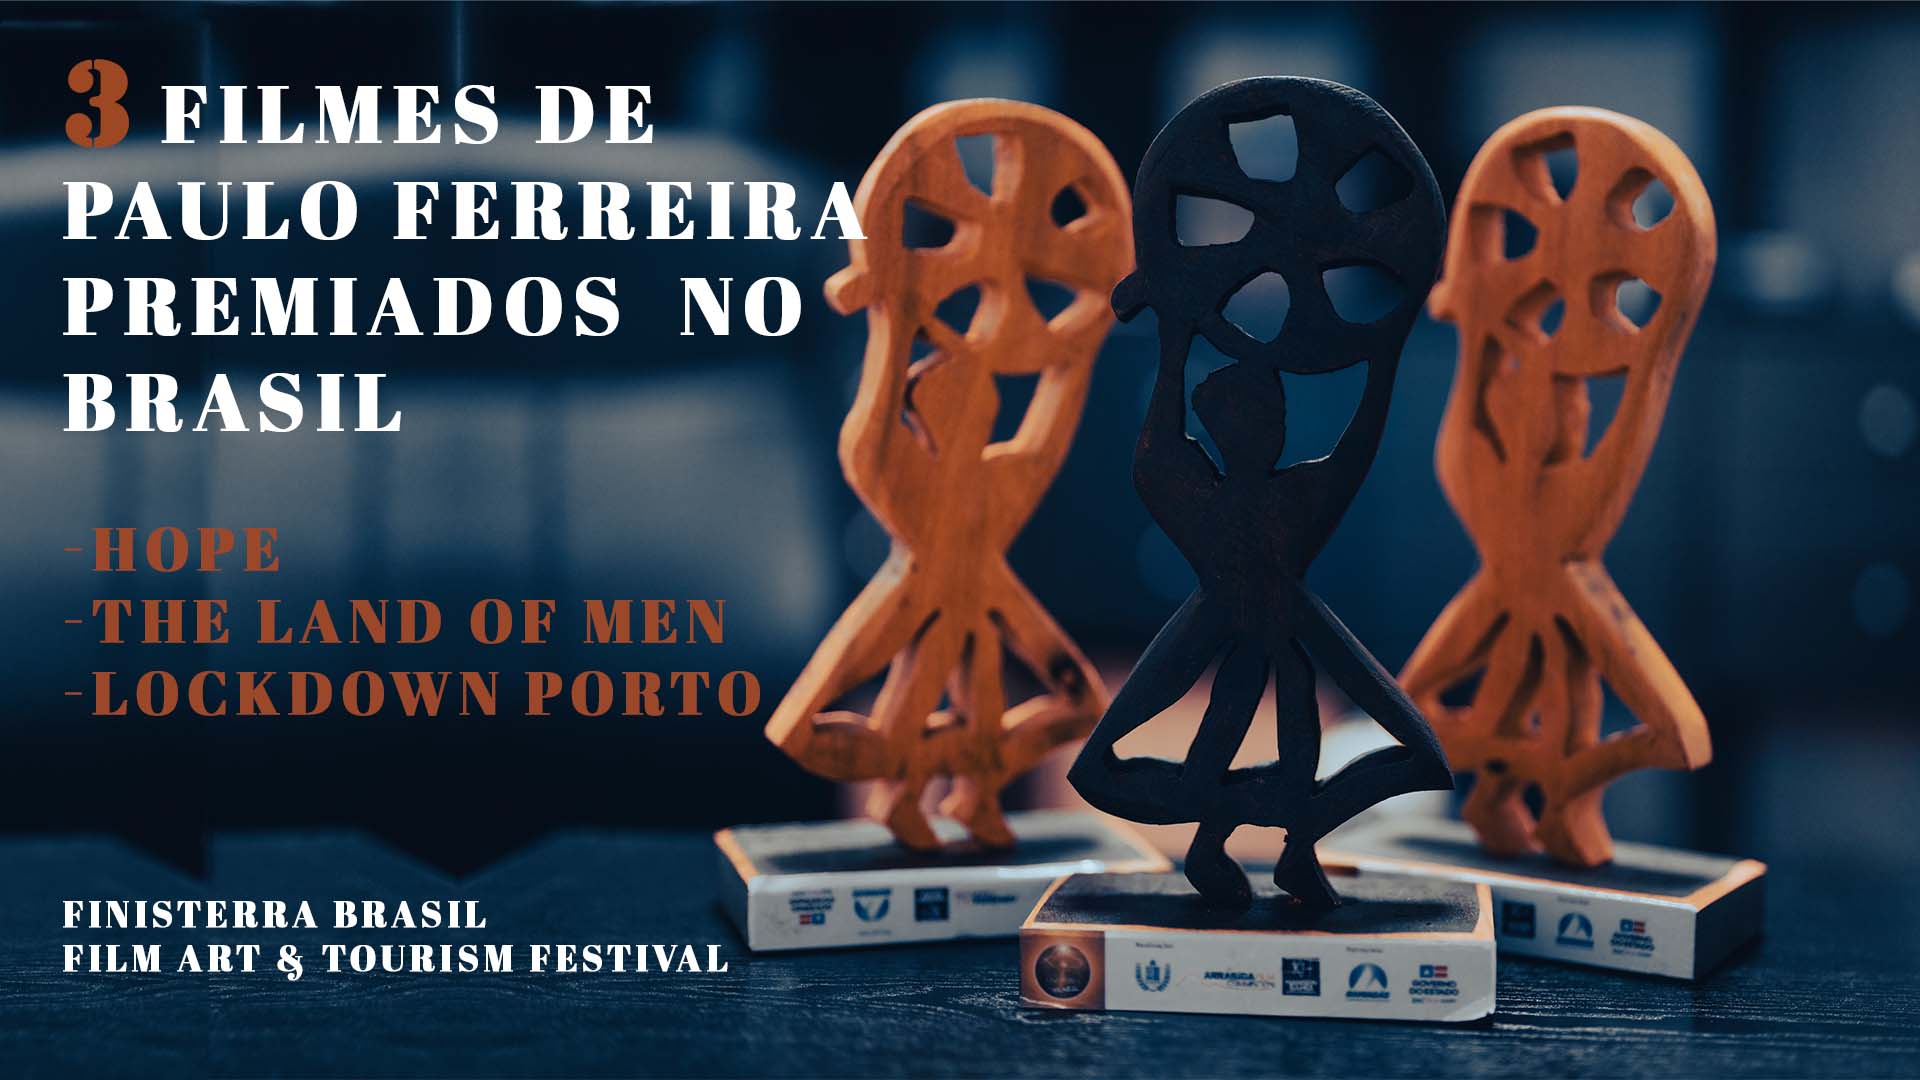 Filmes de Paulo Ferreira premiados no Brasil